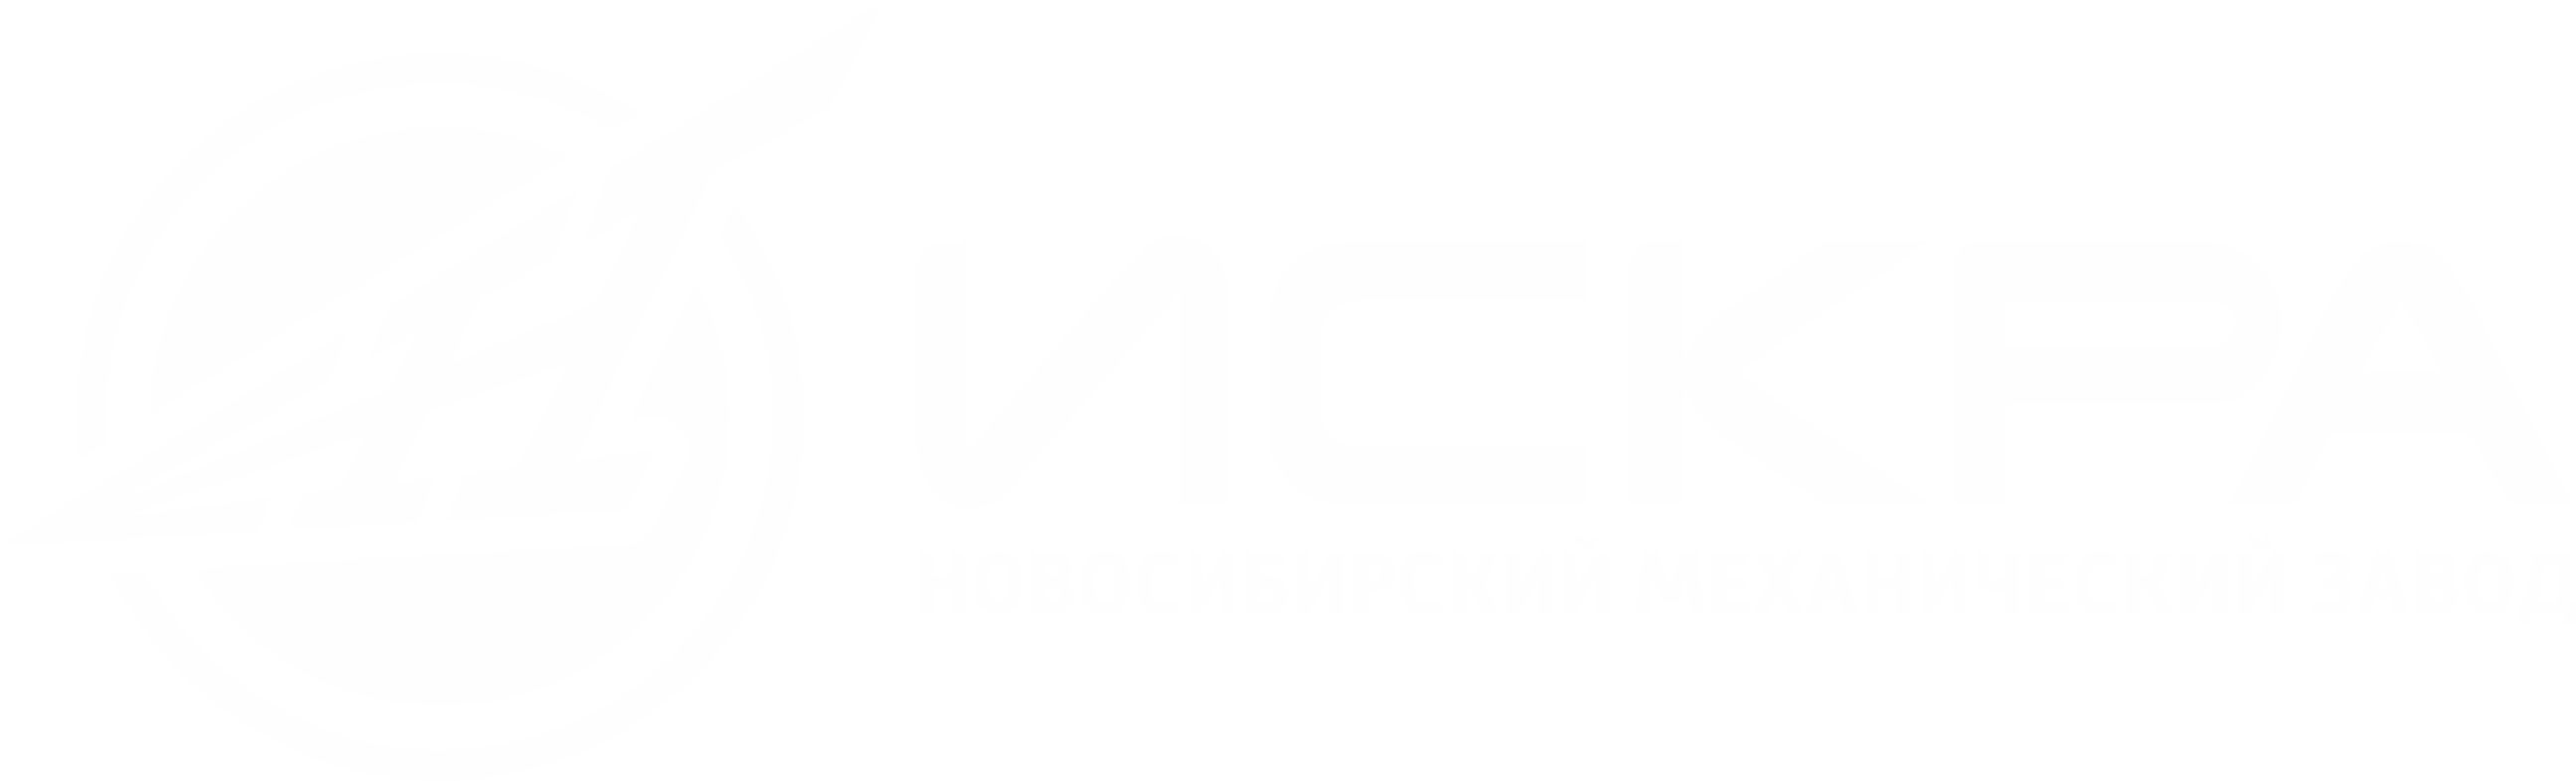 Логотип АО НМЗ Искра